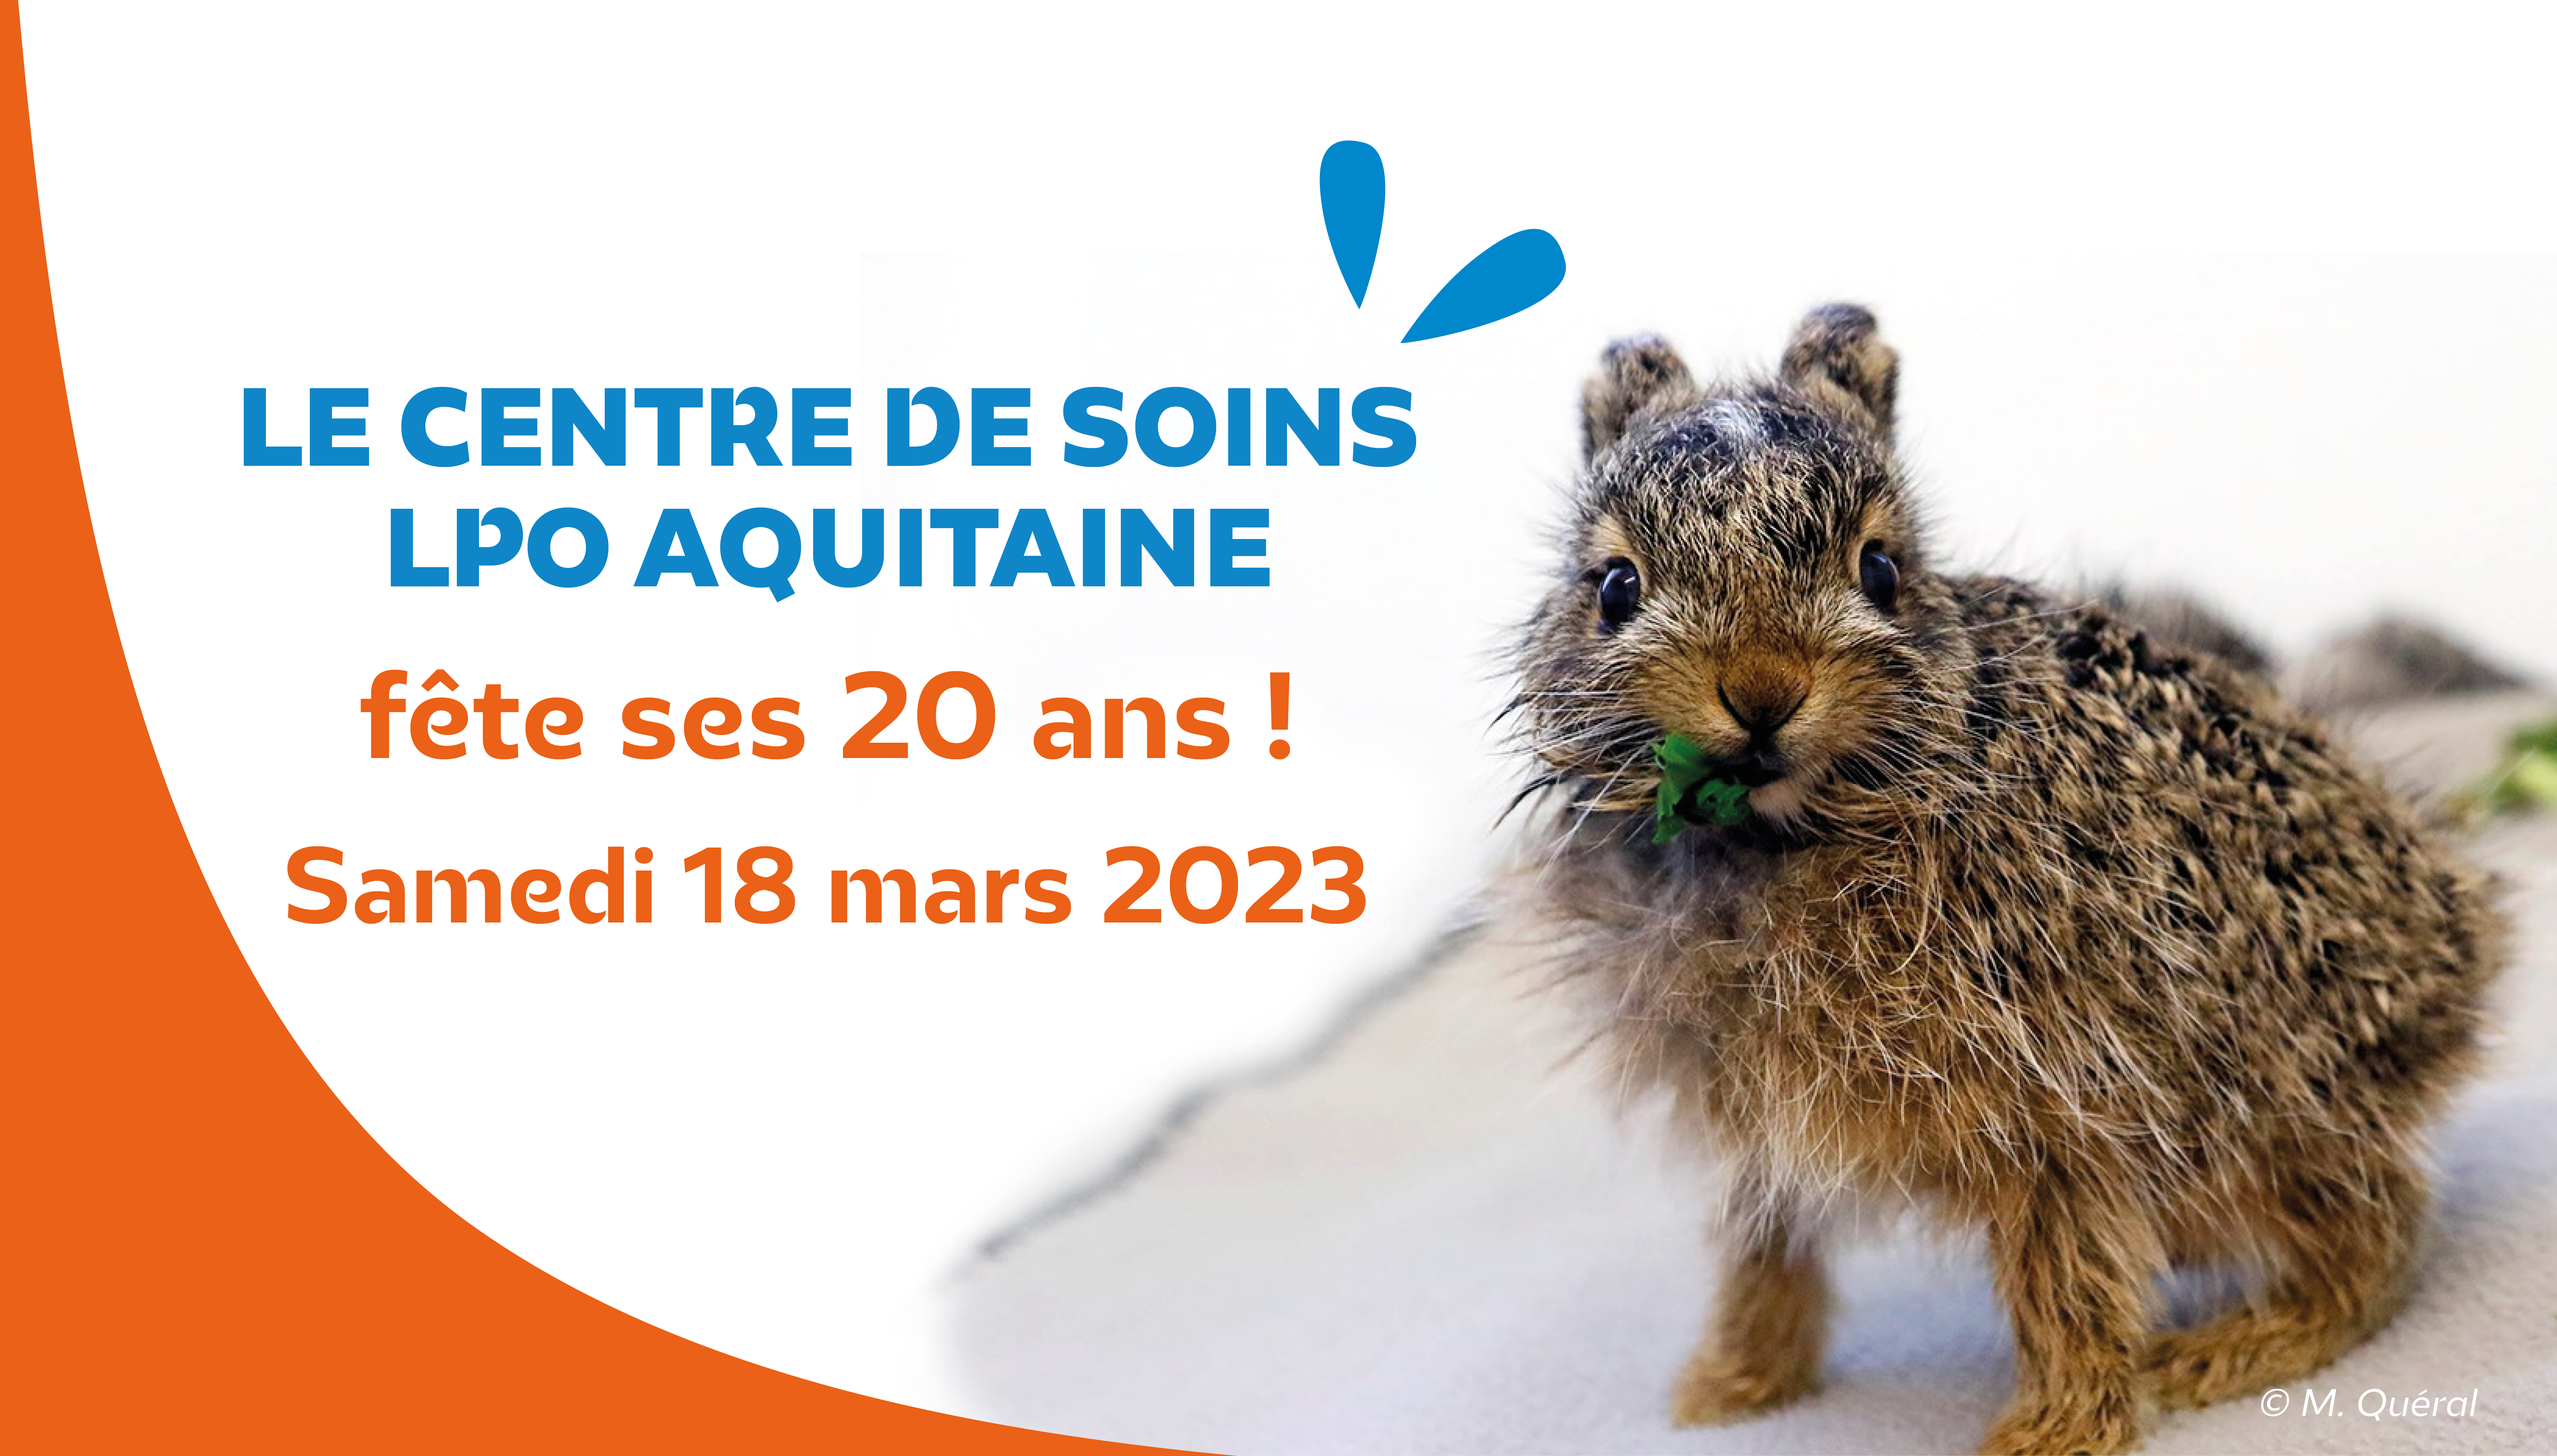 Venez fêter les 20 ans du Centre de soins LPO Aquitaine !